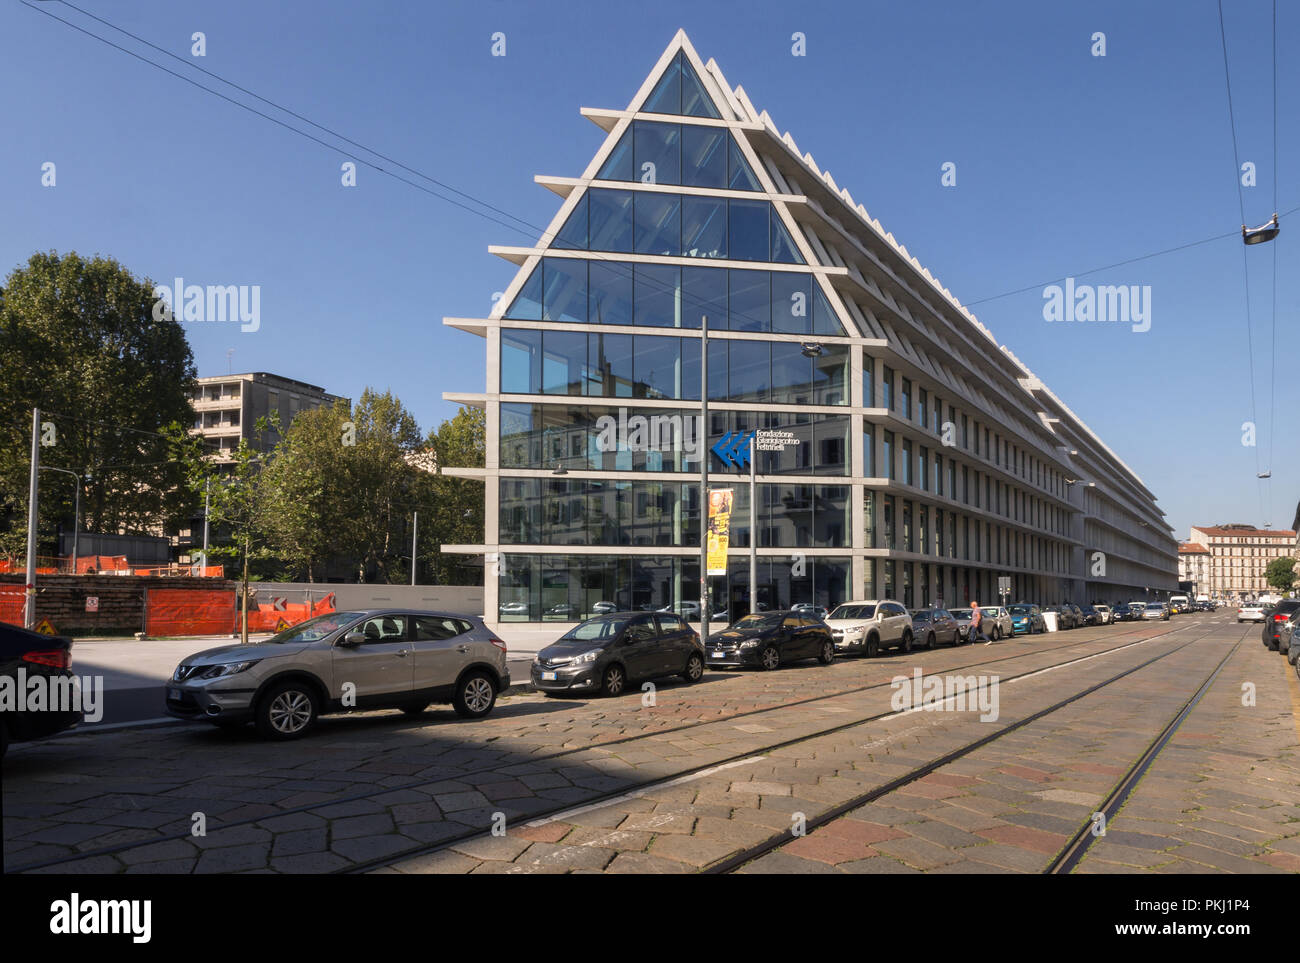 Les architectes Herzog & de Meuron, Feltrinelli Porta Volta centre de recherche emblématique, office & retail building, Milan 2016 Microsoft également siège Italie Banque D'Images